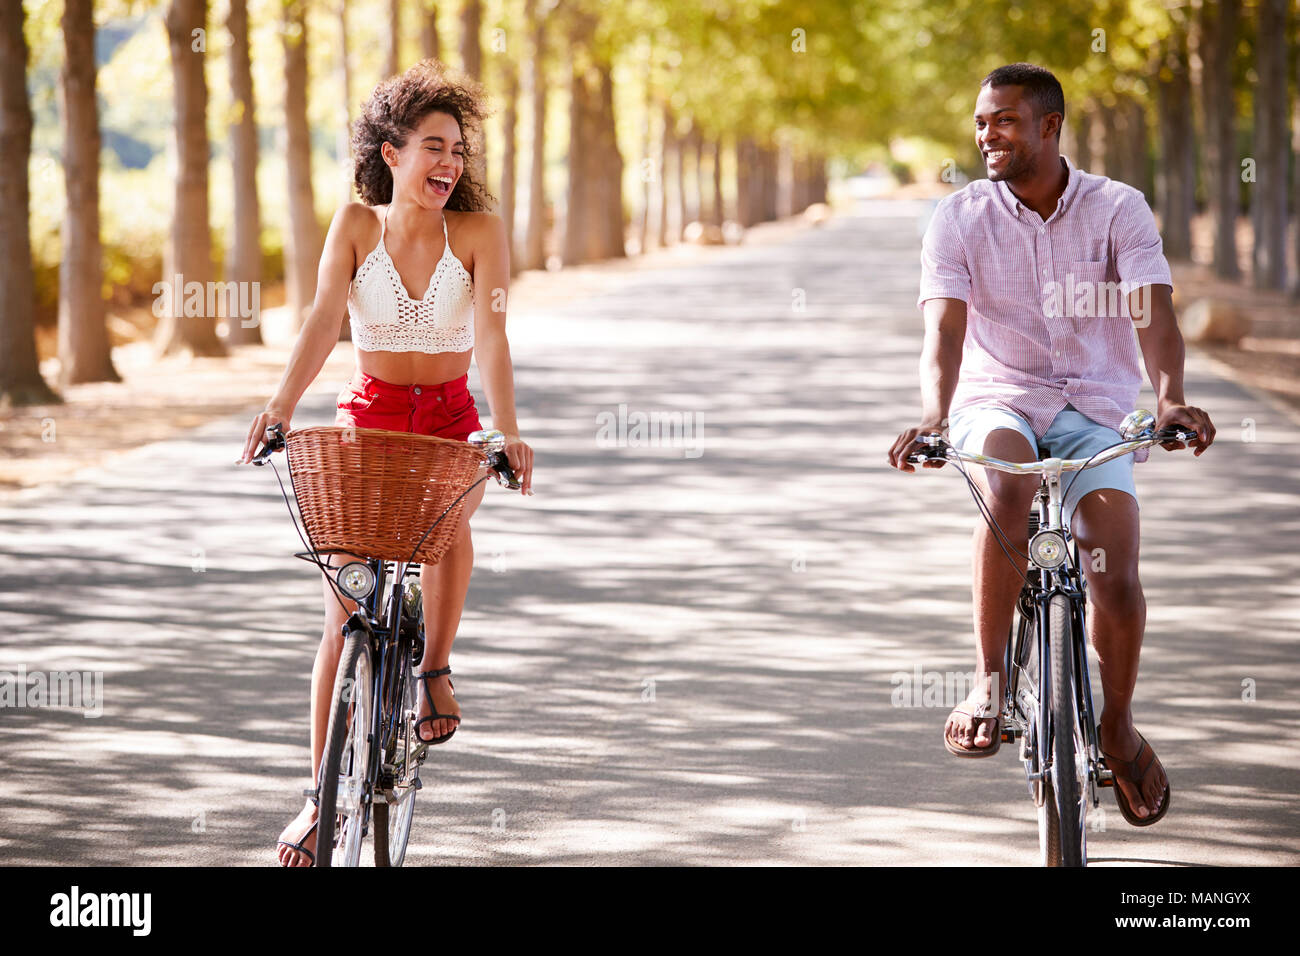 Lachen junges Paar auf dem Fahrrad über eine sonnige Straße Stockfoto